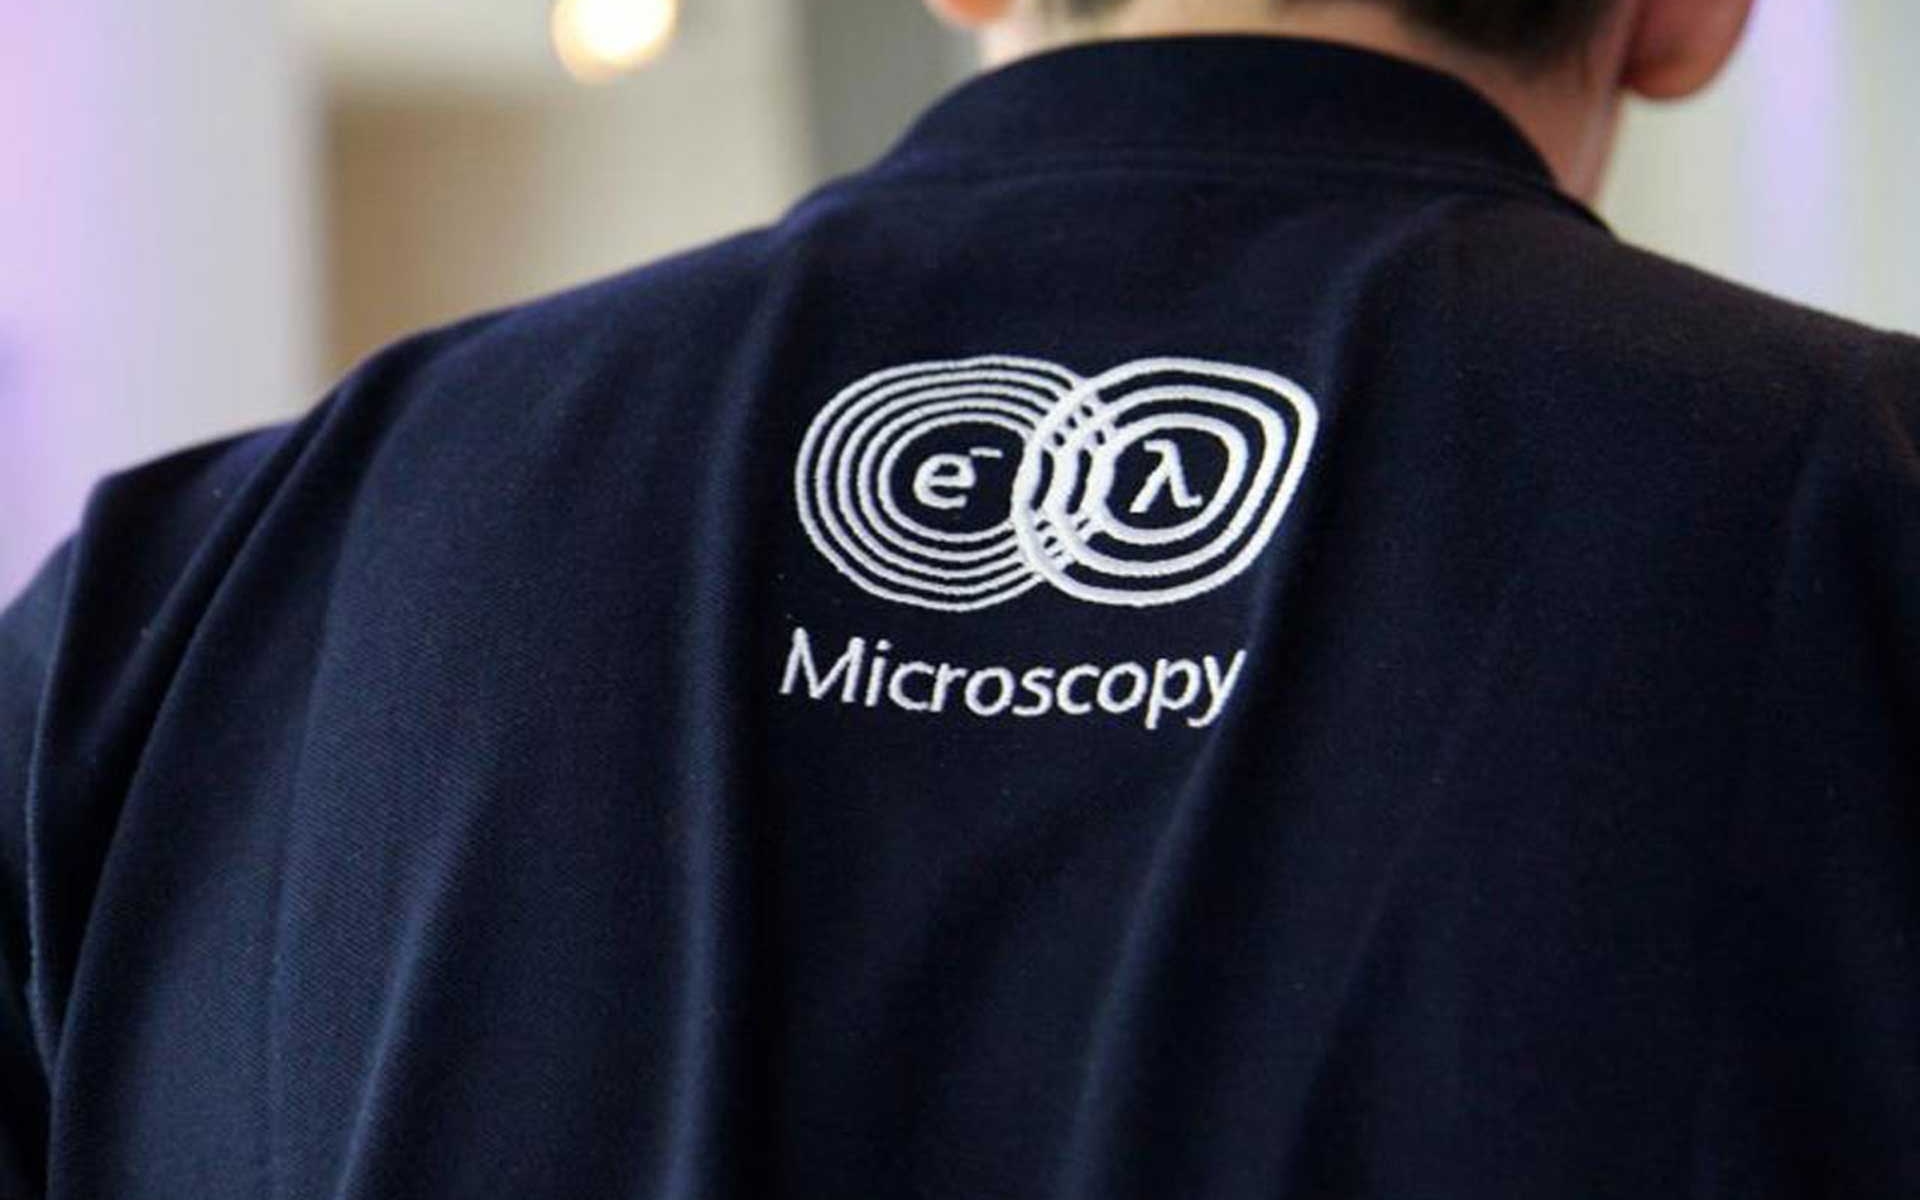 Jacket with logo of Carl Zeiss Microscopy